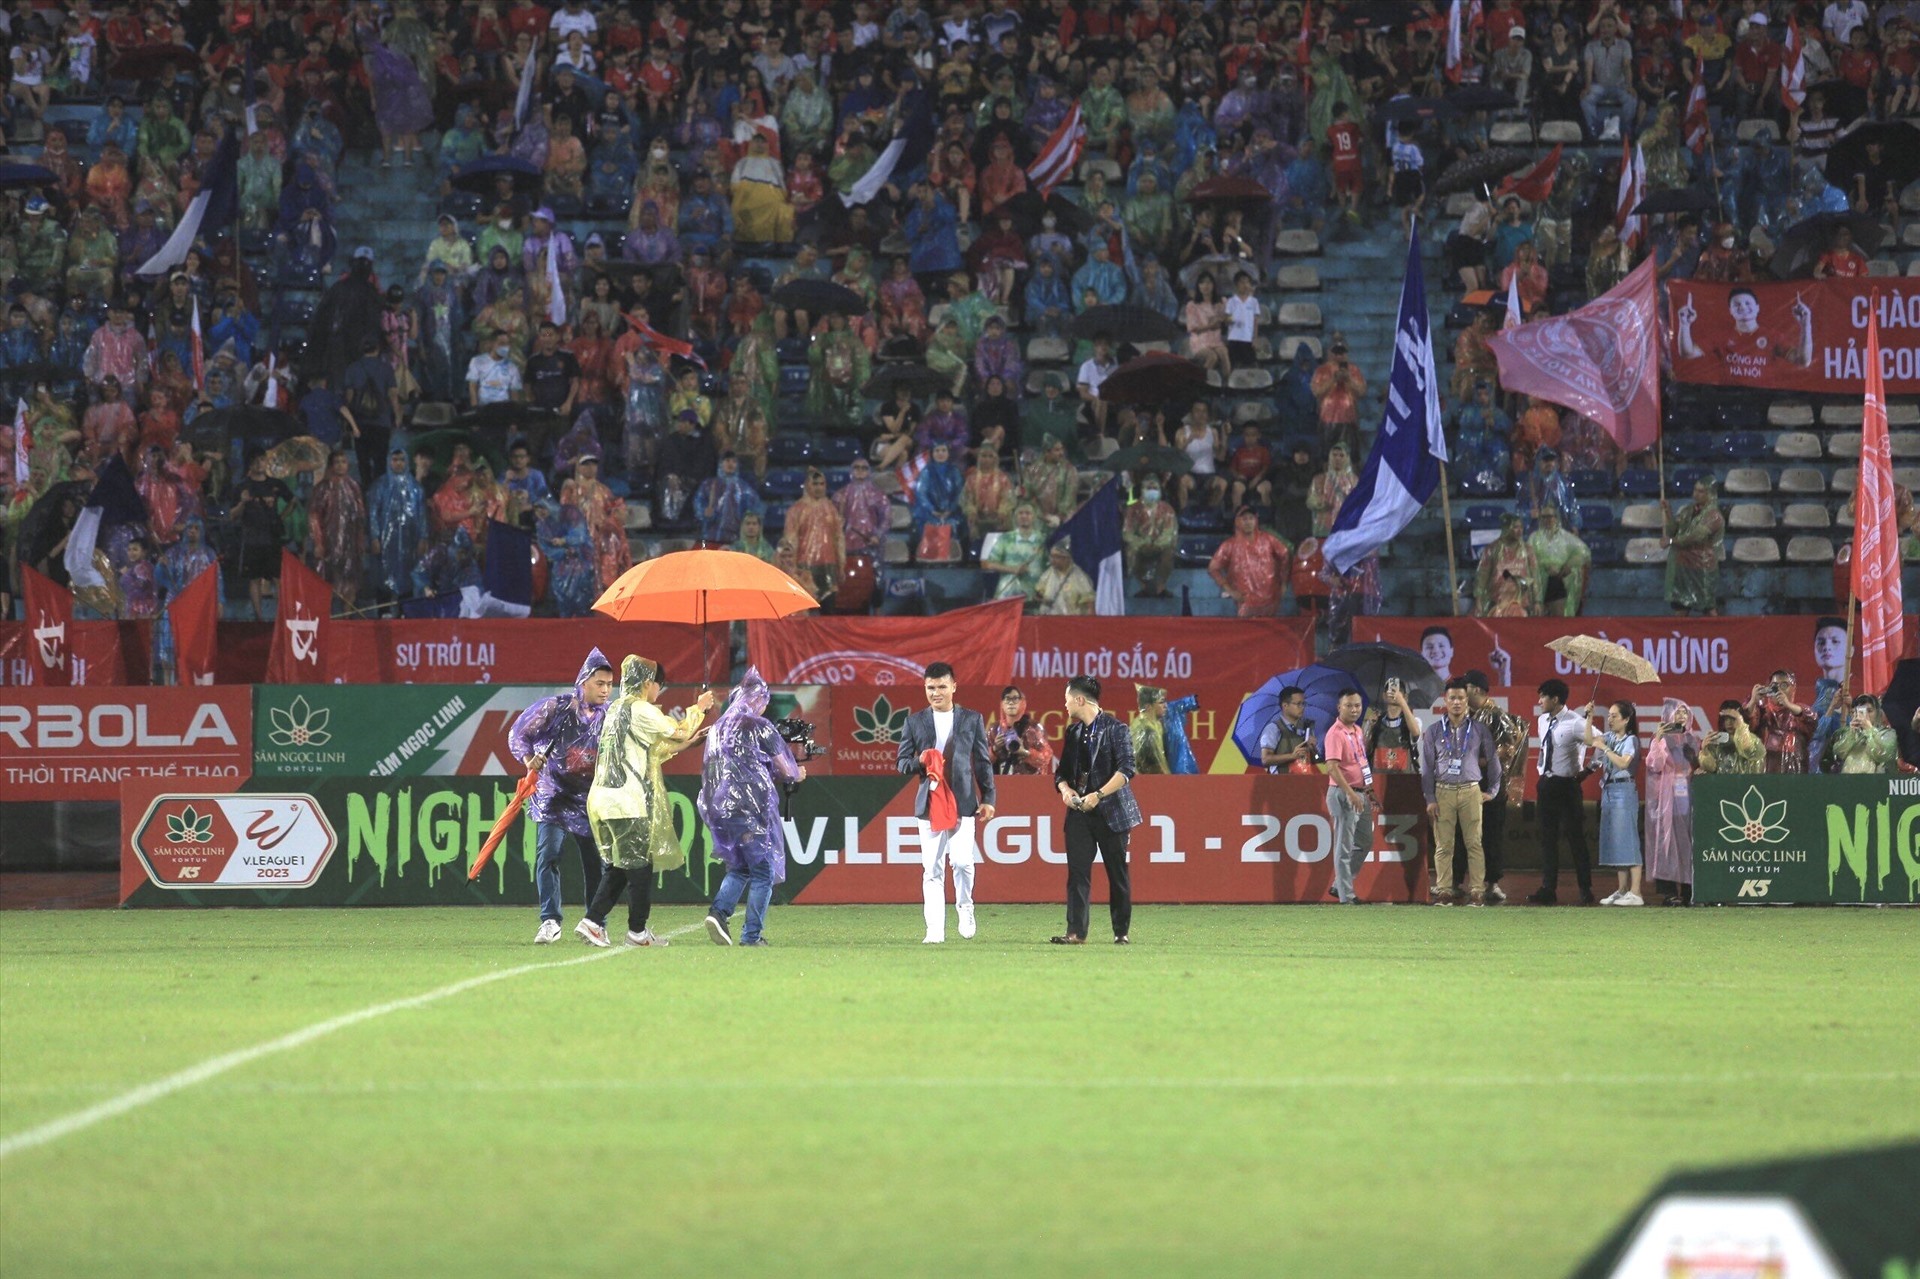 Tối 24.6, trên sân vận động Hàng Đẫy diễn ra trận đấu giữa Công an Hà Nội và Hồng Lĩnh Hà Tĩnh trong khuôn khổ vòng 12 Night Wolf V.League 2023. 